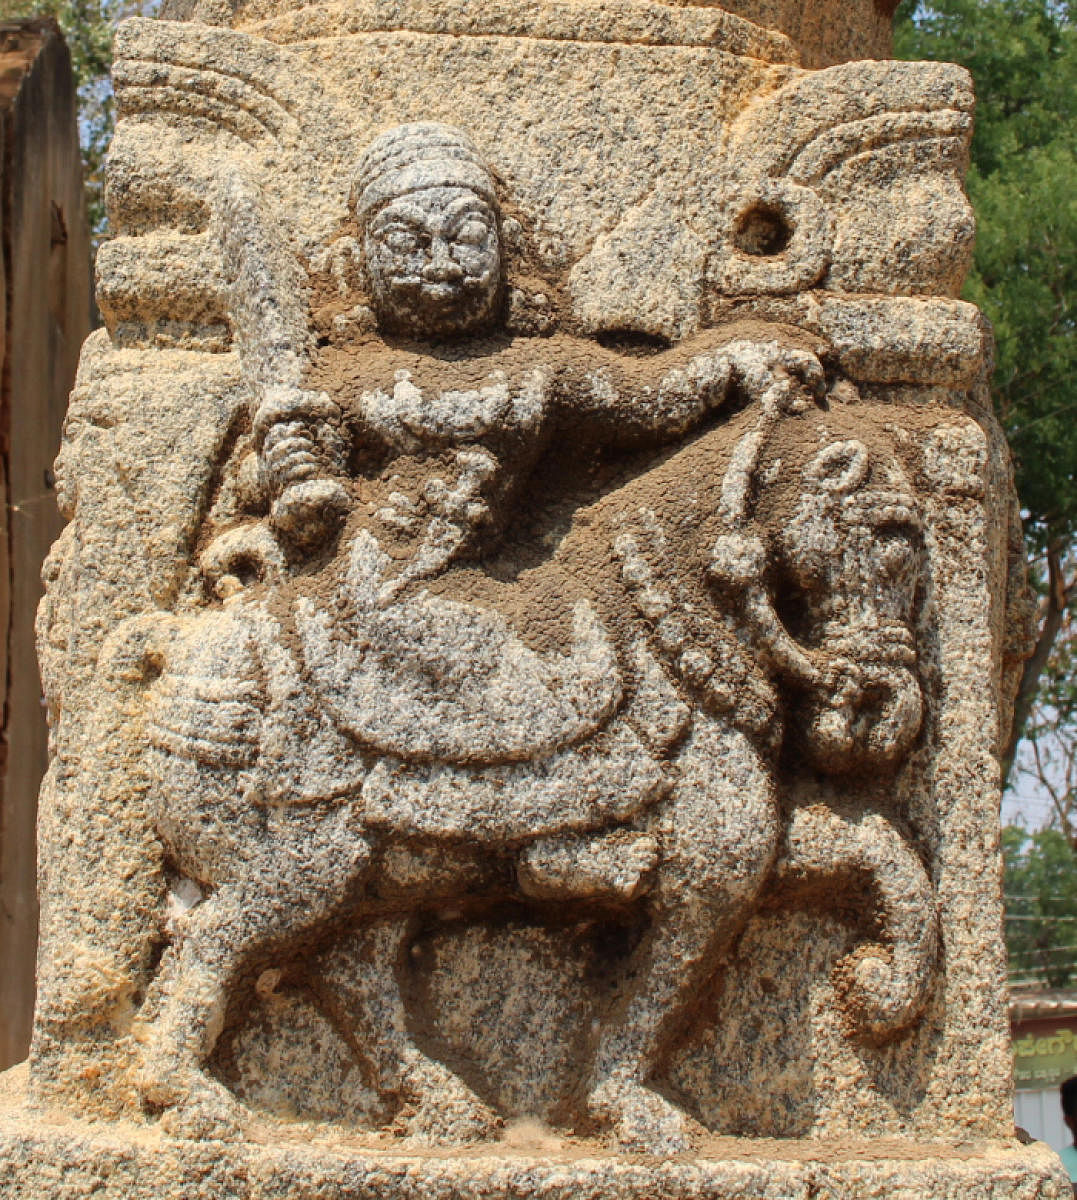 ಮಾಗಡಿ: ಕೆಂಪೇಗೌಡರ 511ನೇ ಜಯಂತಿ, ಜನಪರ ಆಡಳಿತ ರೂವಾರಿಗಳ ಸ್ಮರಣೆ